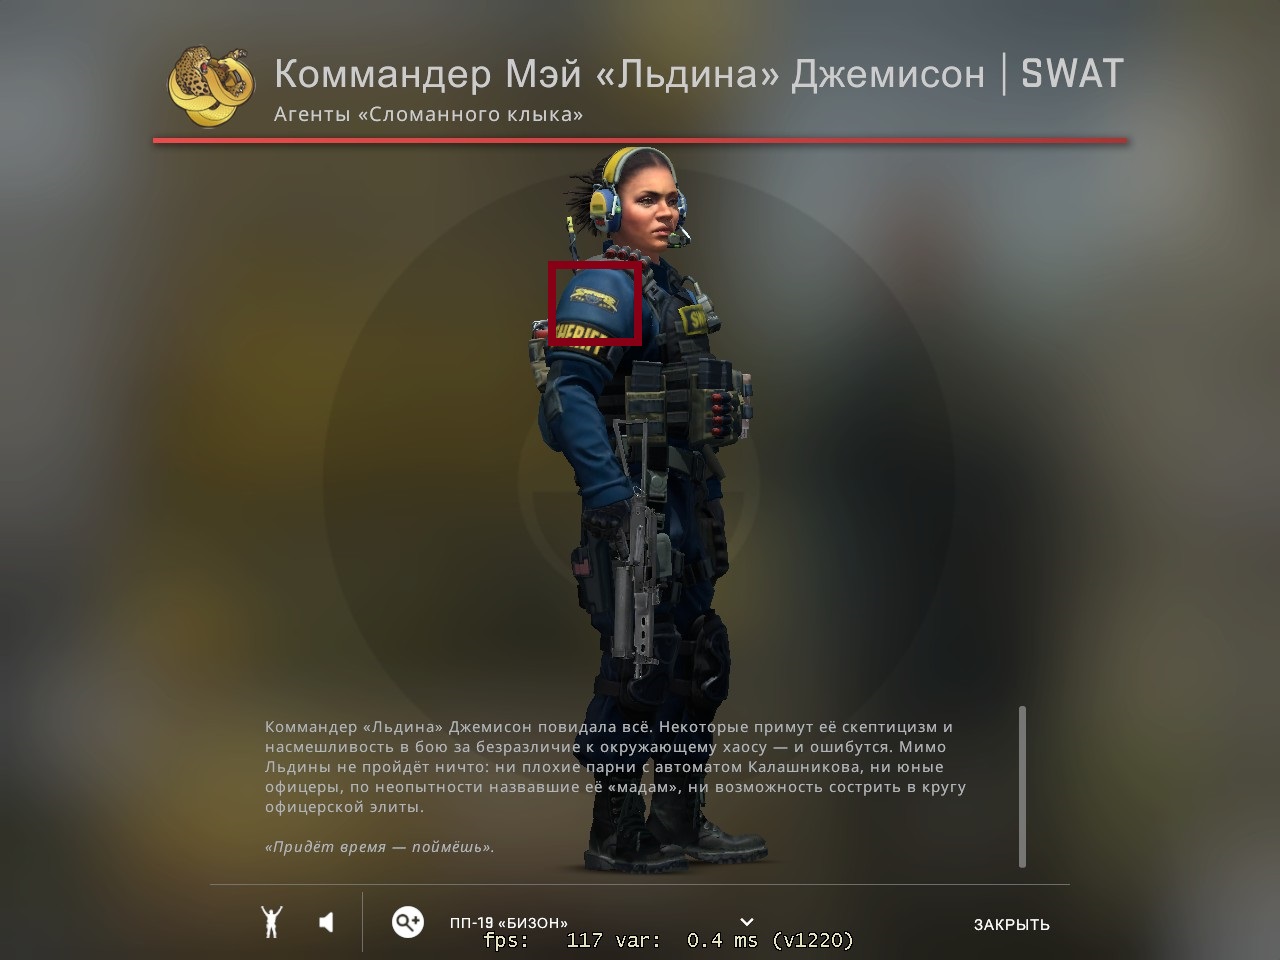 Коммандер Джемисон обладает высоким уровнем физической подготовки и навыками владения оружием. Она прошла множество тренировок и участвовала во множестве операций, что позволяет ей быть готовой к любым вызовам и задачам, которые могут возникнуть в работе SWAT.